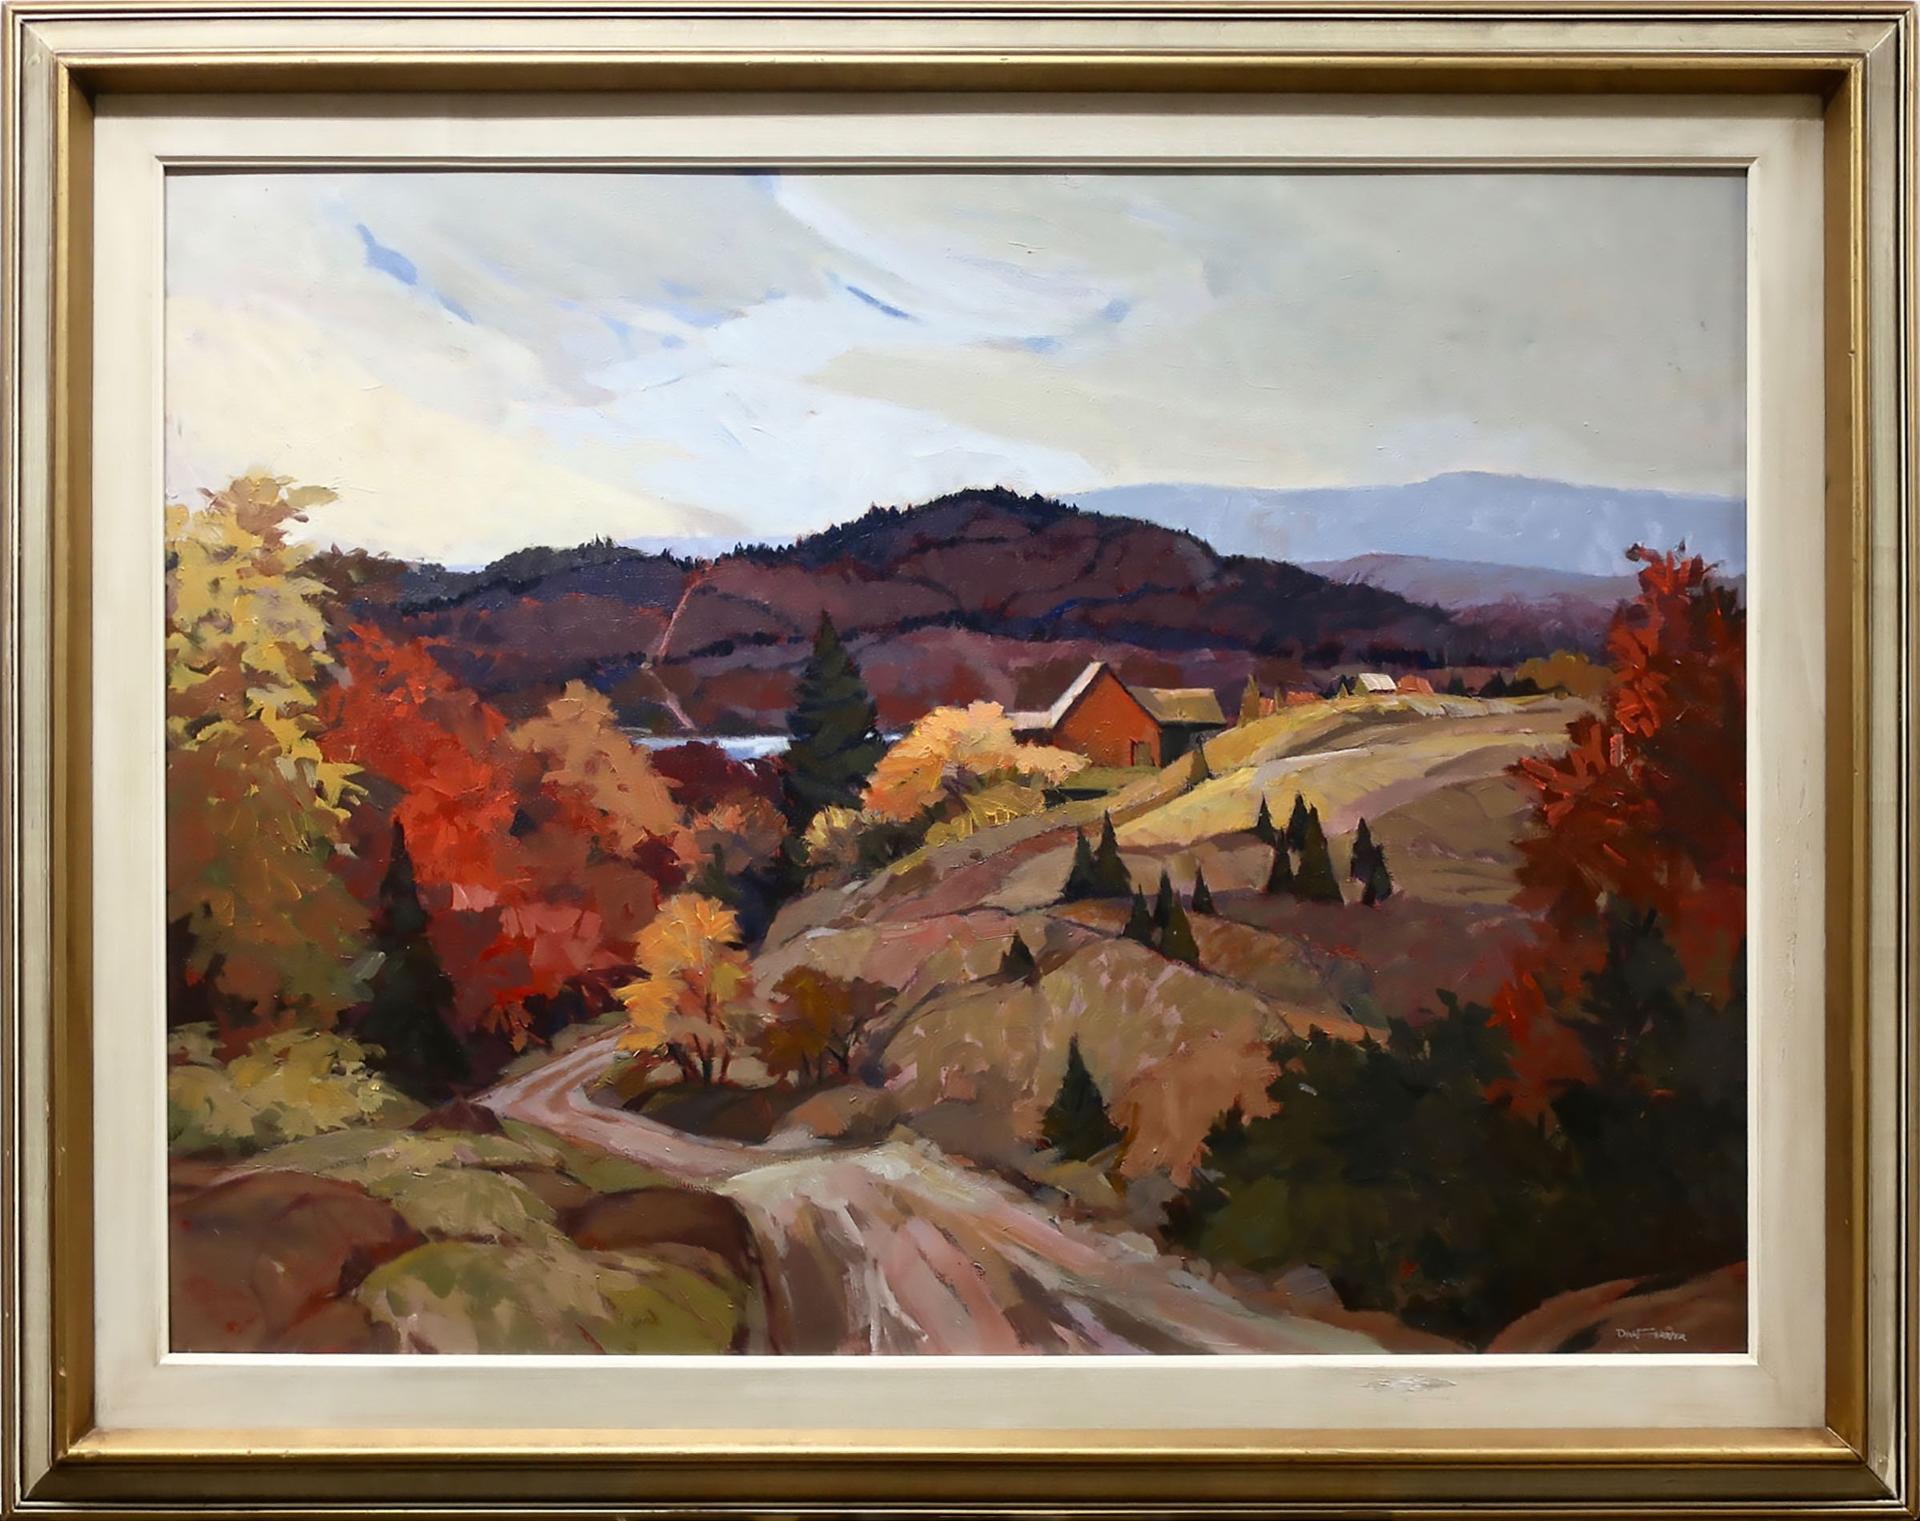 Richard (Dick) Ferrier (1929-2002) - Untitled (Fall Landscape)